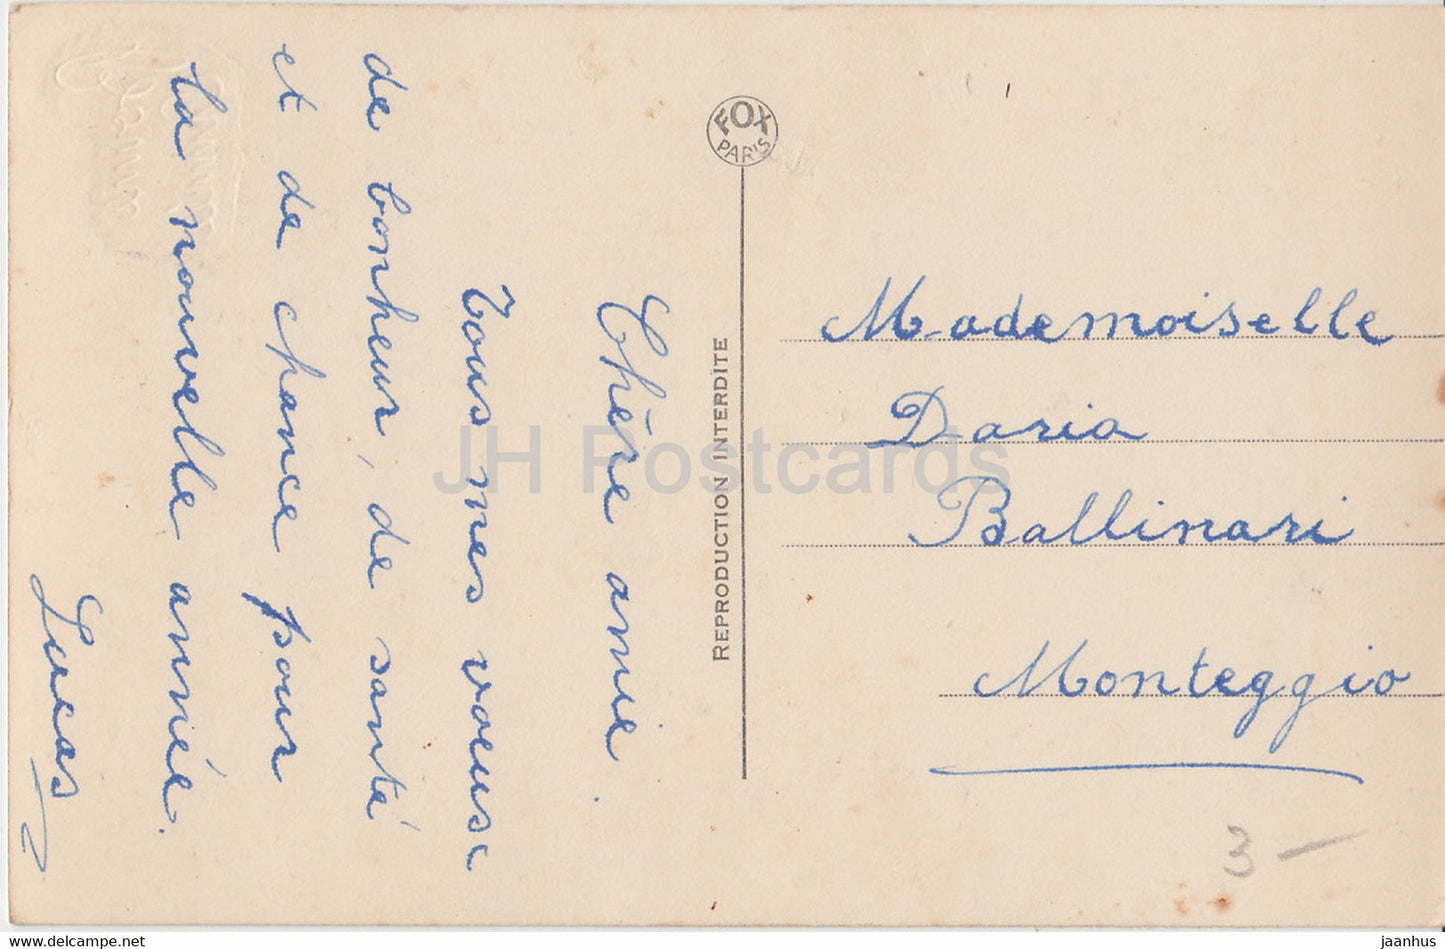 Neujahrsgrußkarte – Bonne Annee – Paar – Fox Paris 4428 – alte Postkarte – Frankreich – gebraucht